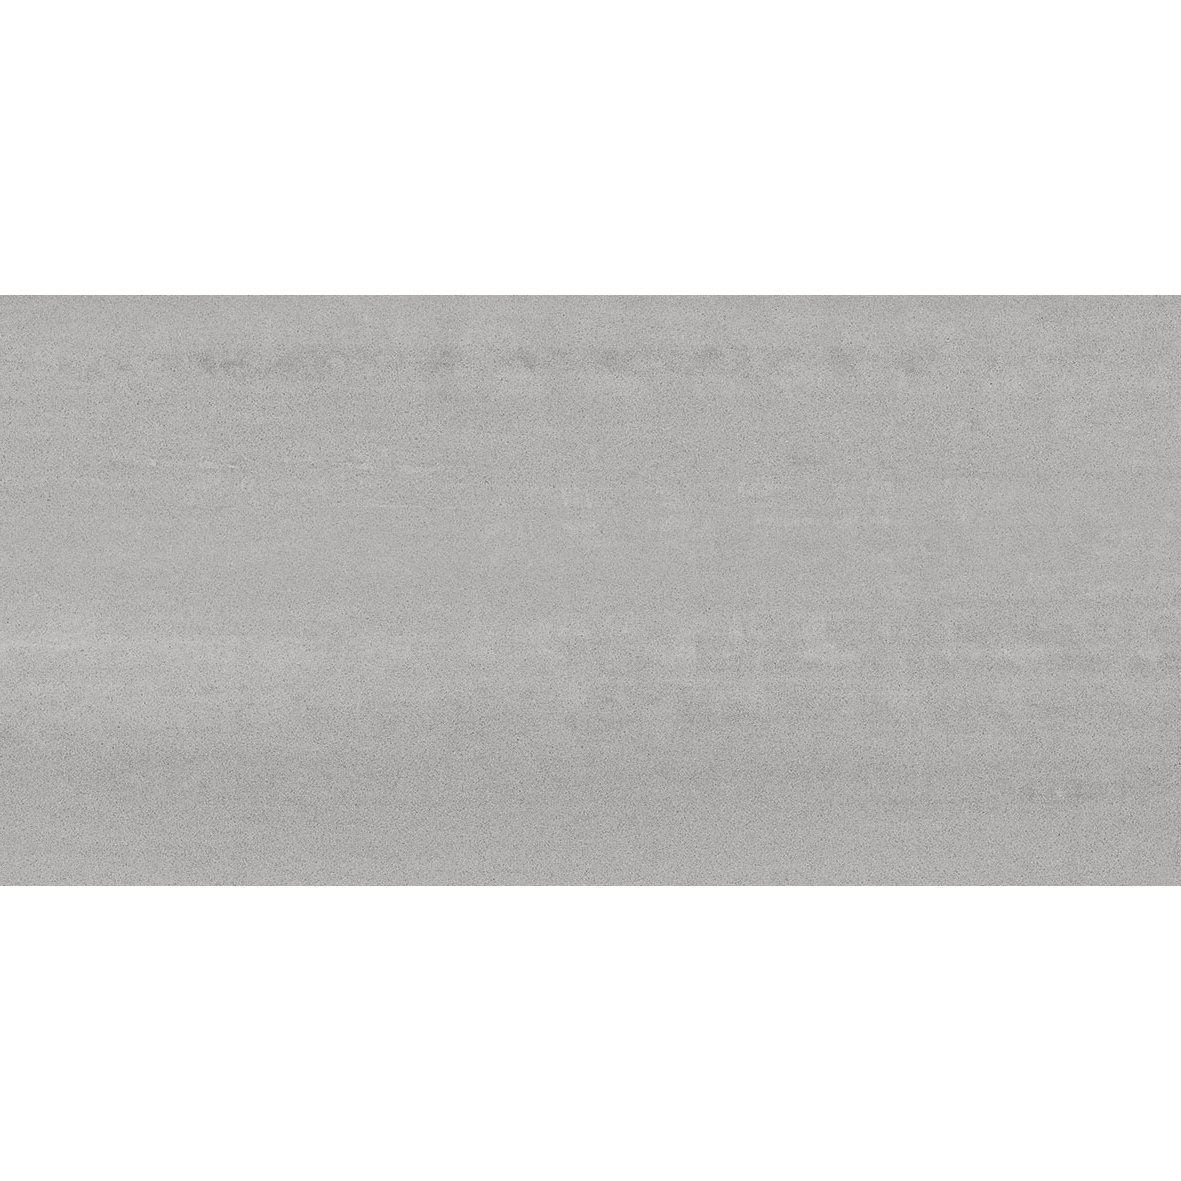 Плитка Kerama marazzi Про Дабл серый обрезной DD201100R 30х60 см плитка керамическая kerama marazzi коллекция маритимос 30х60 mp000018437